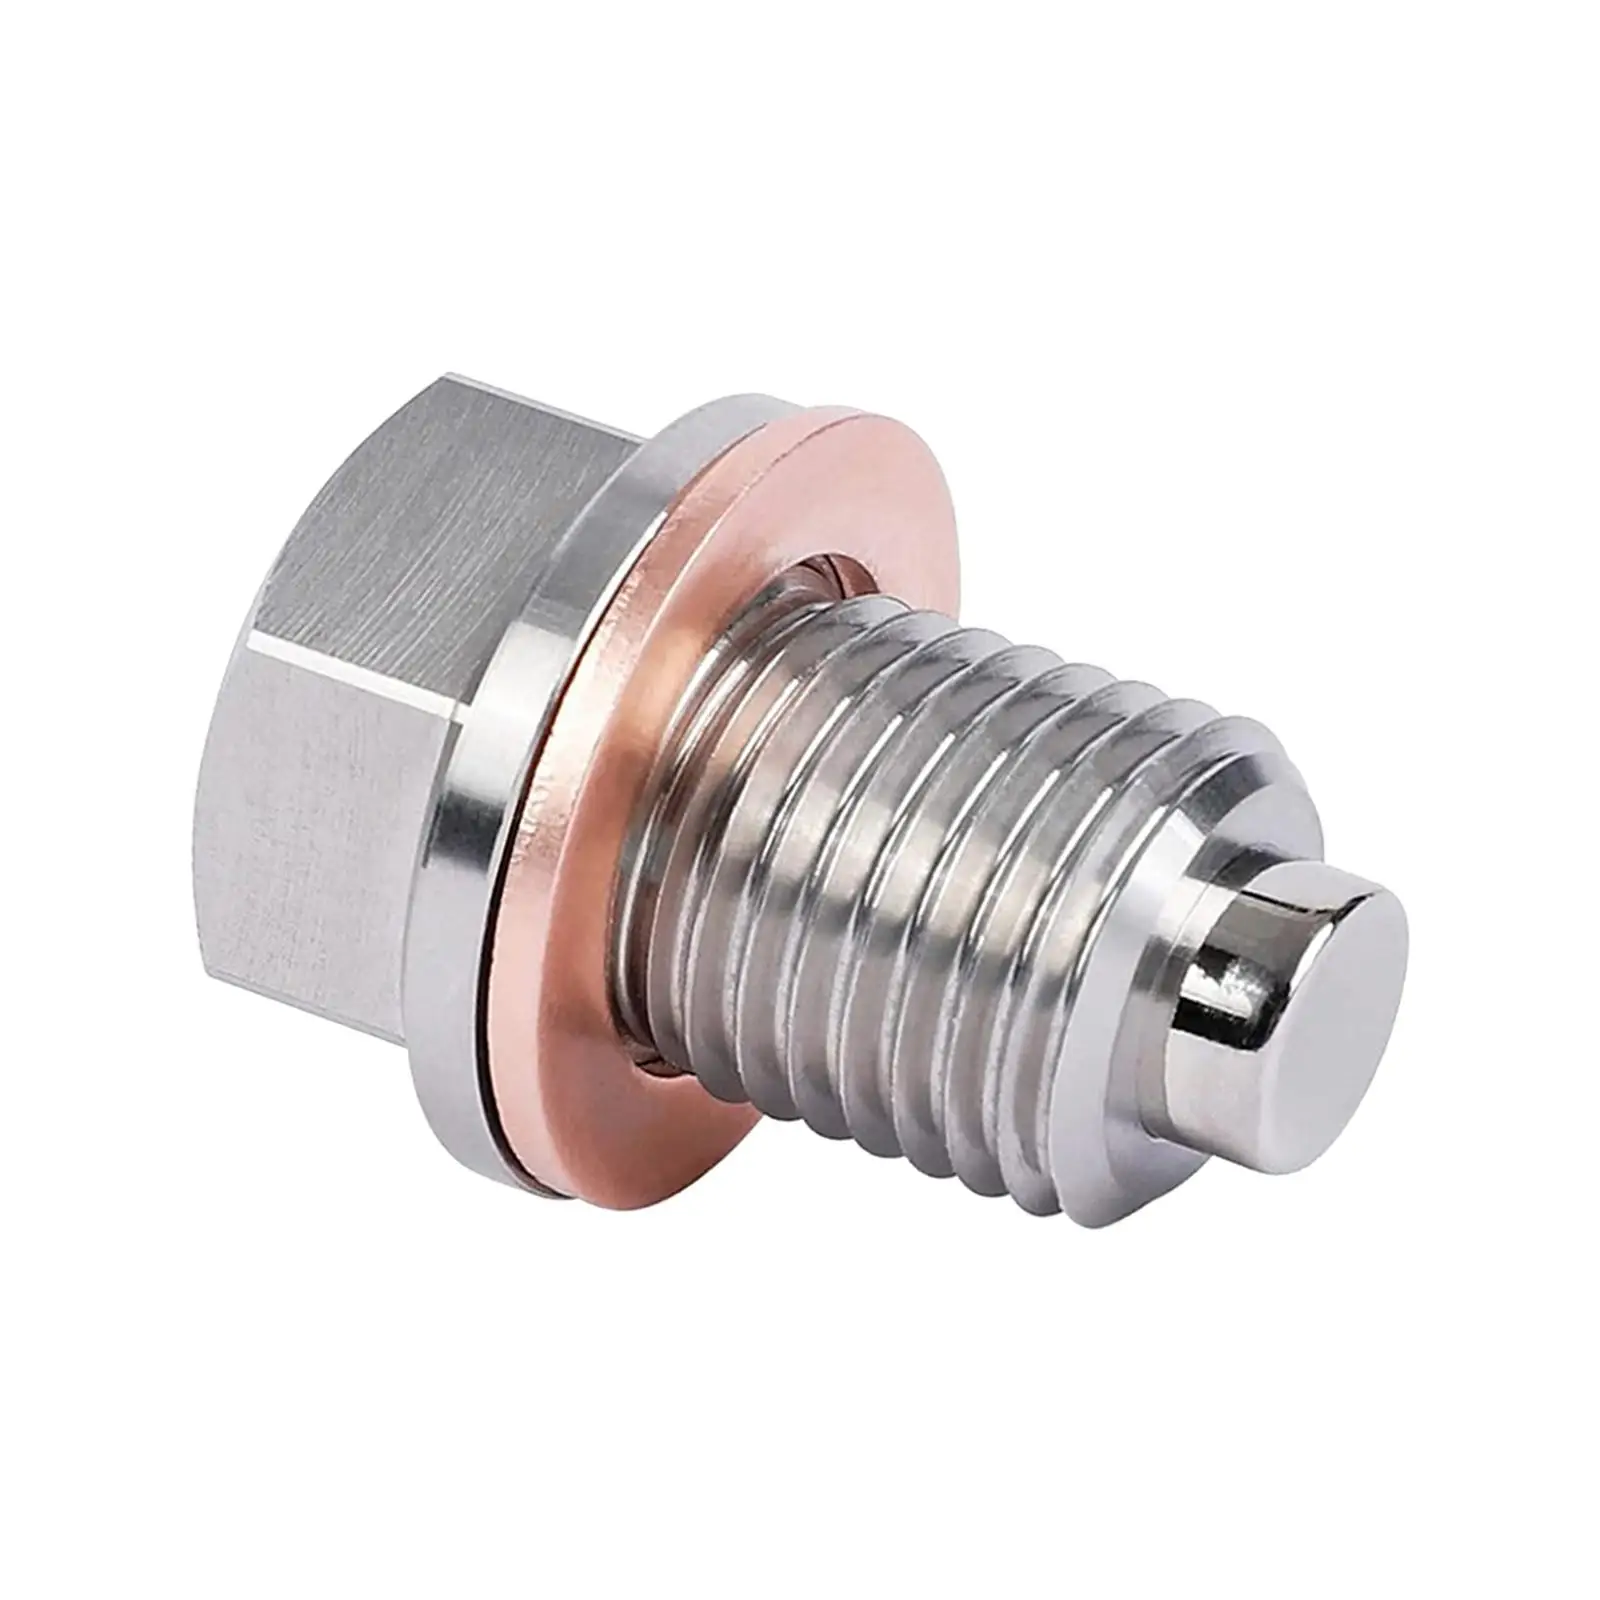 Oil Pan Drain Plug M12x1.5 Accessories Replace Parts Neodymium Magnet